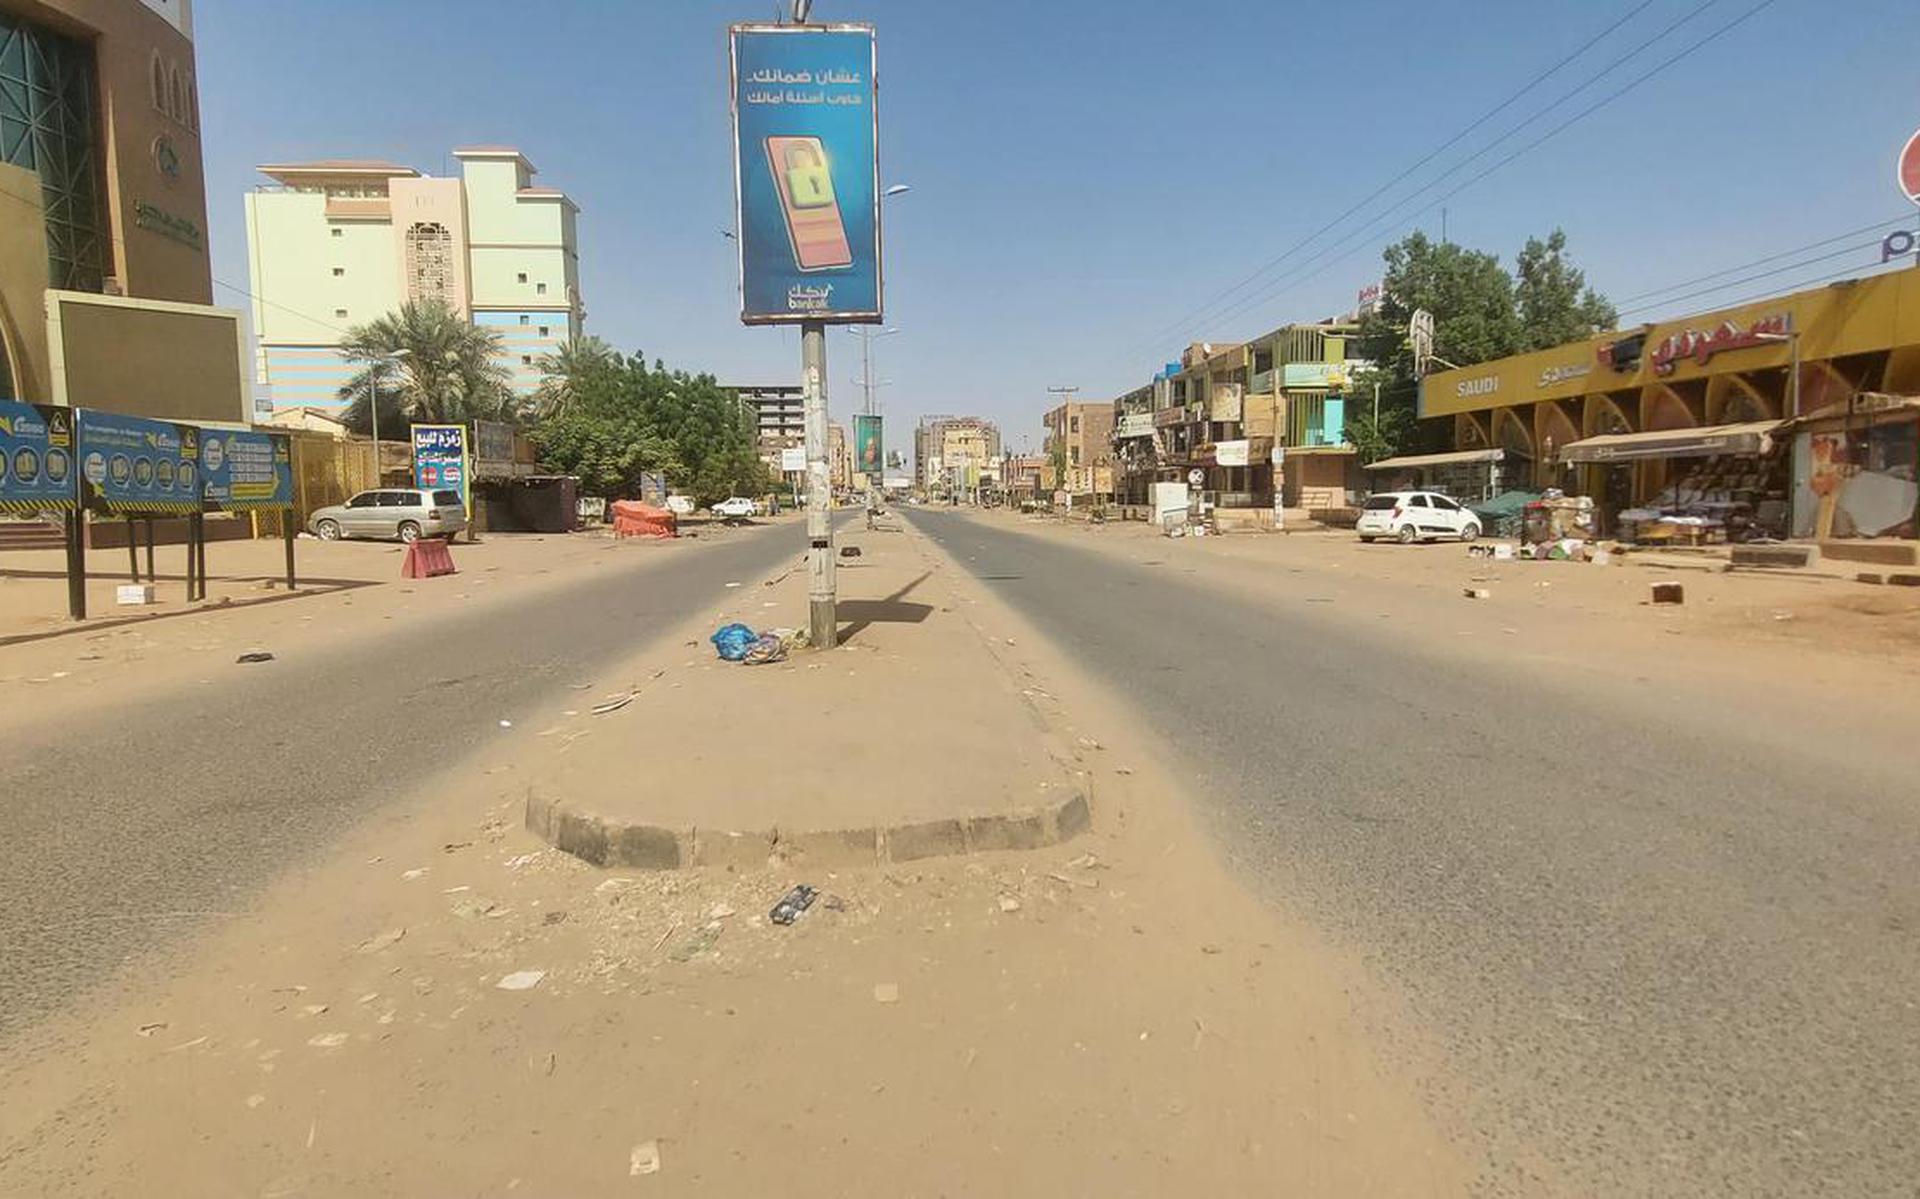 Weinig mensen durven zich in Khartoem op straat te vertonen.